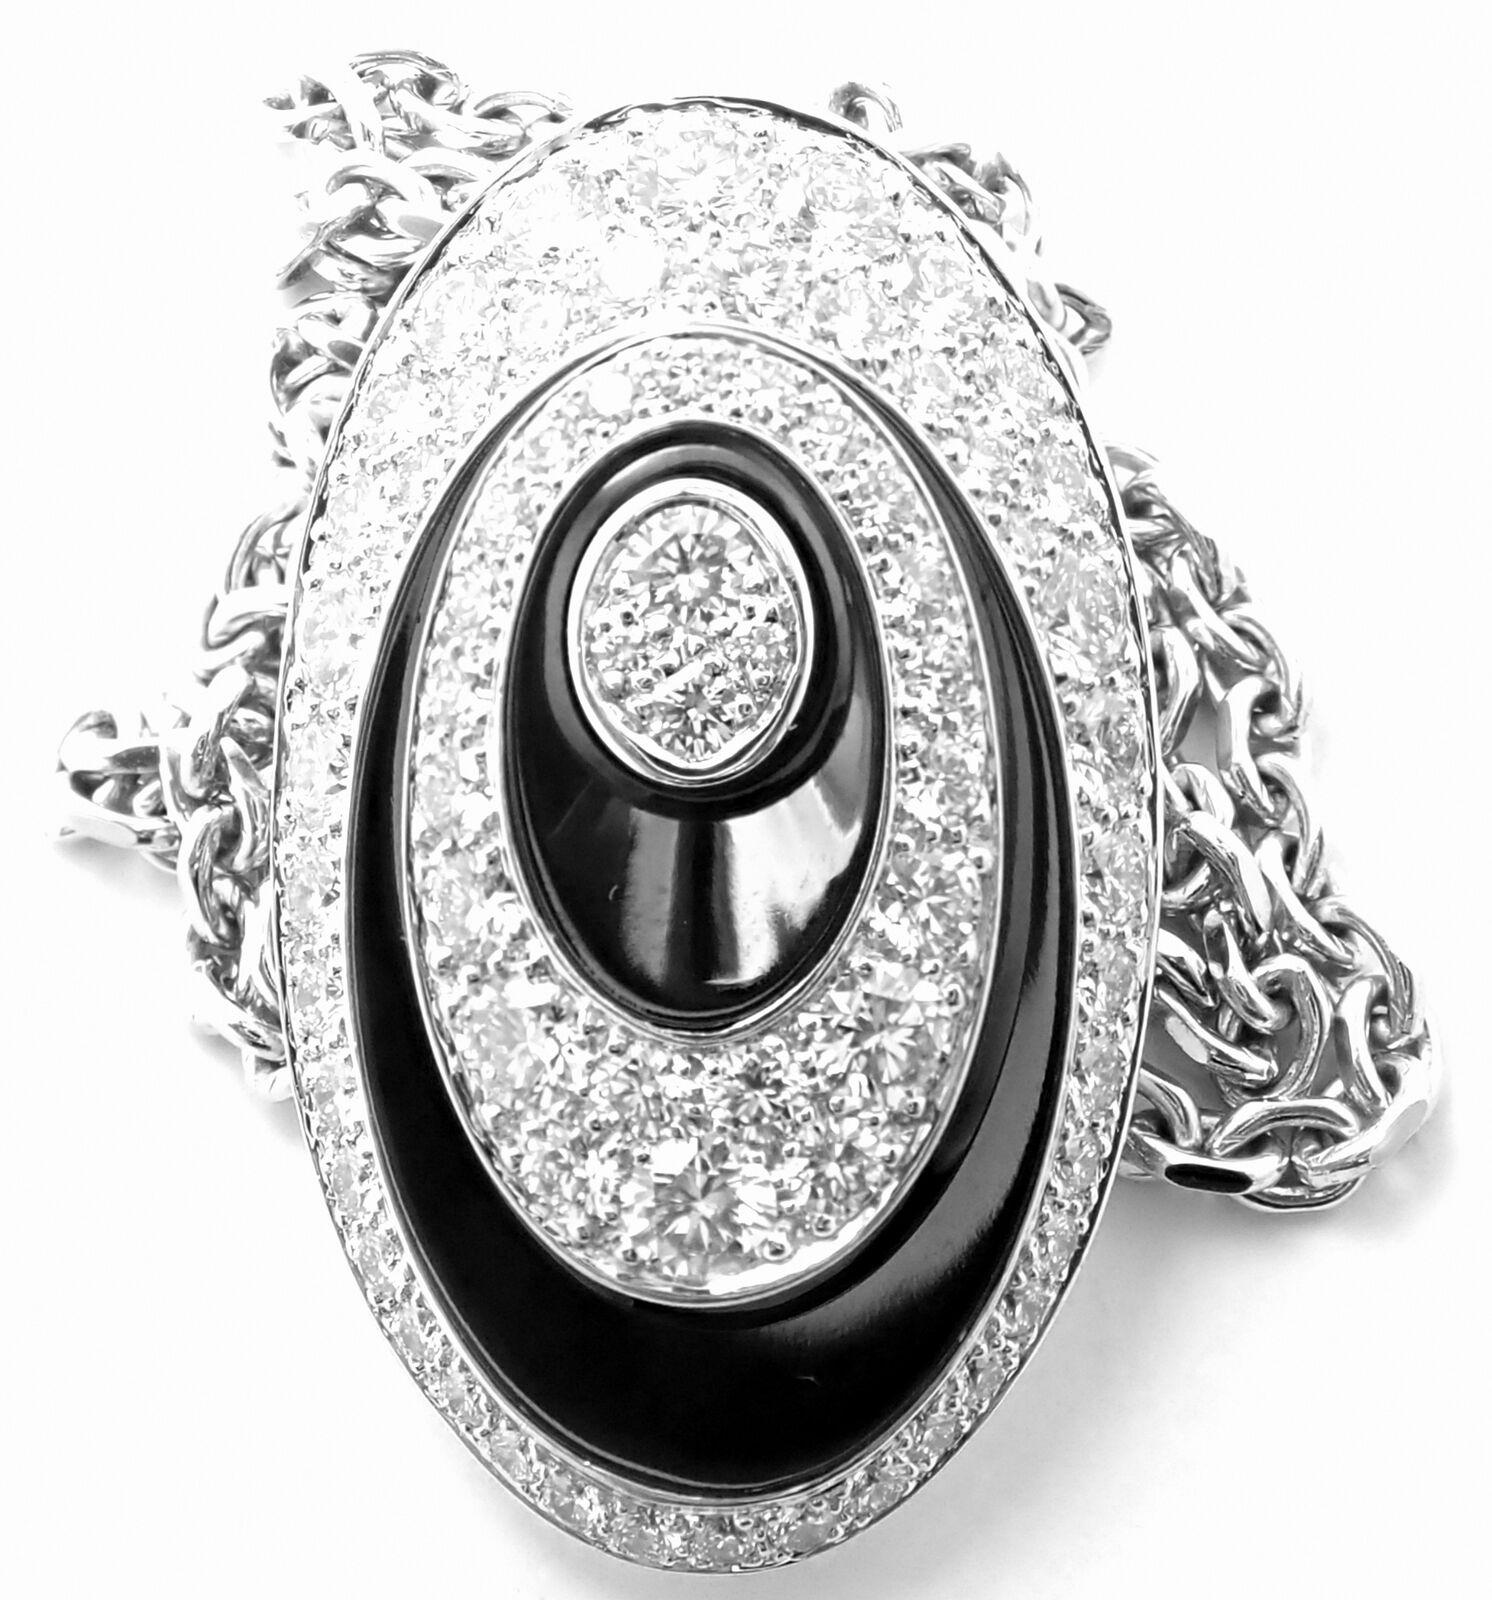 Collier pendentif Hypnose en or blanc 18 ct et corde de soie noire avec diamants par Cartier.
Avec des diamants ronds de taille brillante de couleur G, pureté VVS1 poids total environ 4ct
Ce collier est accompagné d'un certificat d'authenticité de